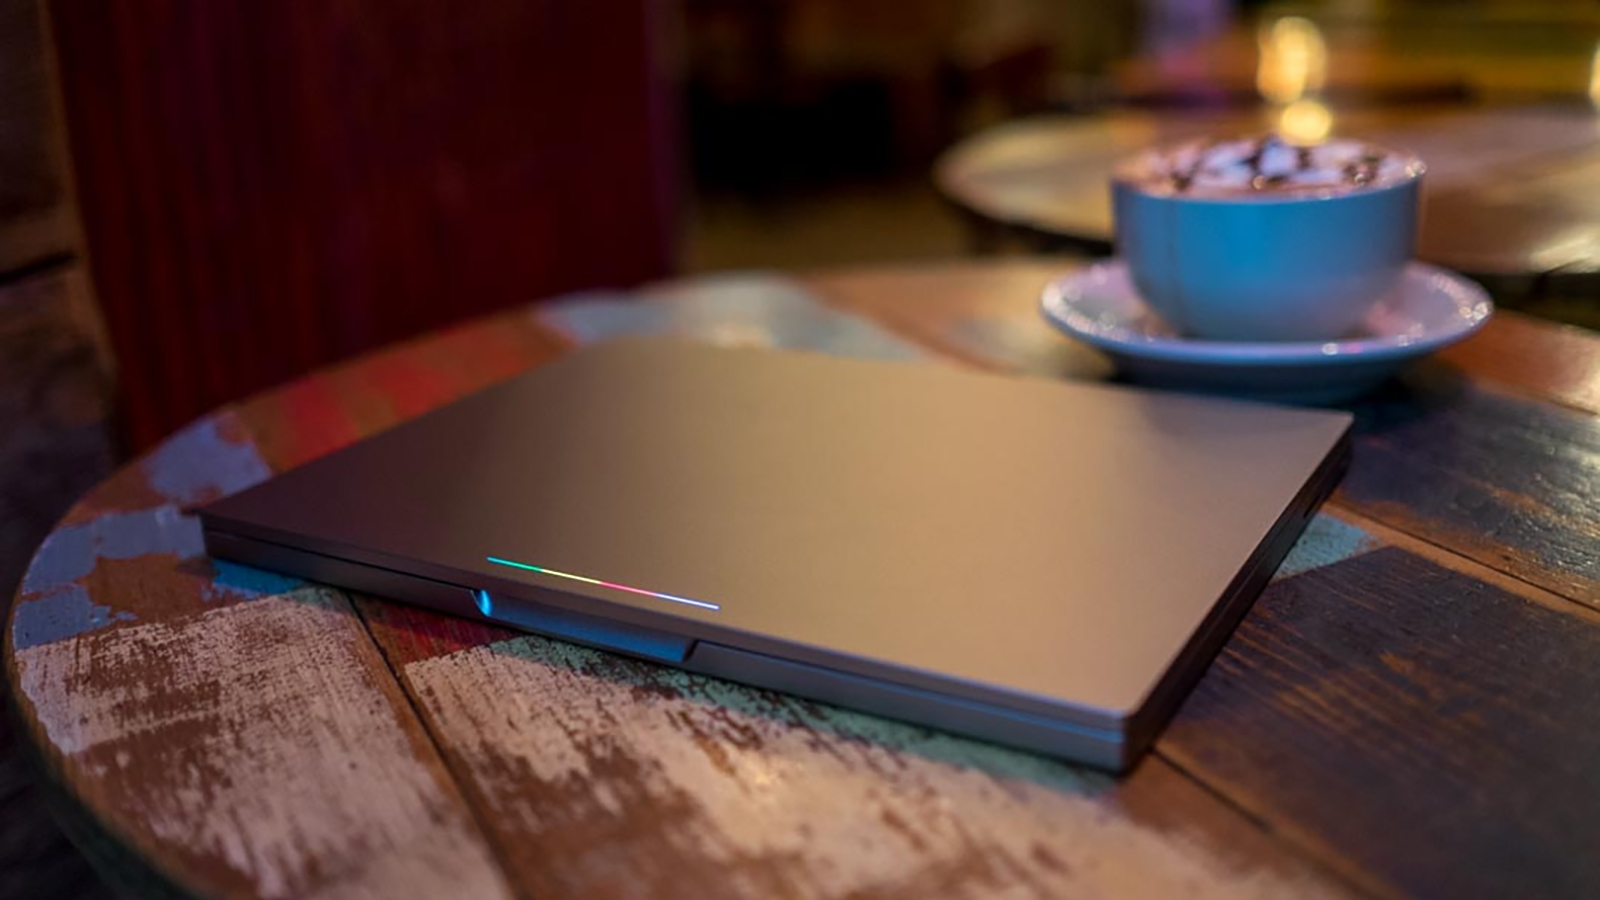 Chromebook Pixel 2015 एउटा टेबलमा बन्द भयो।